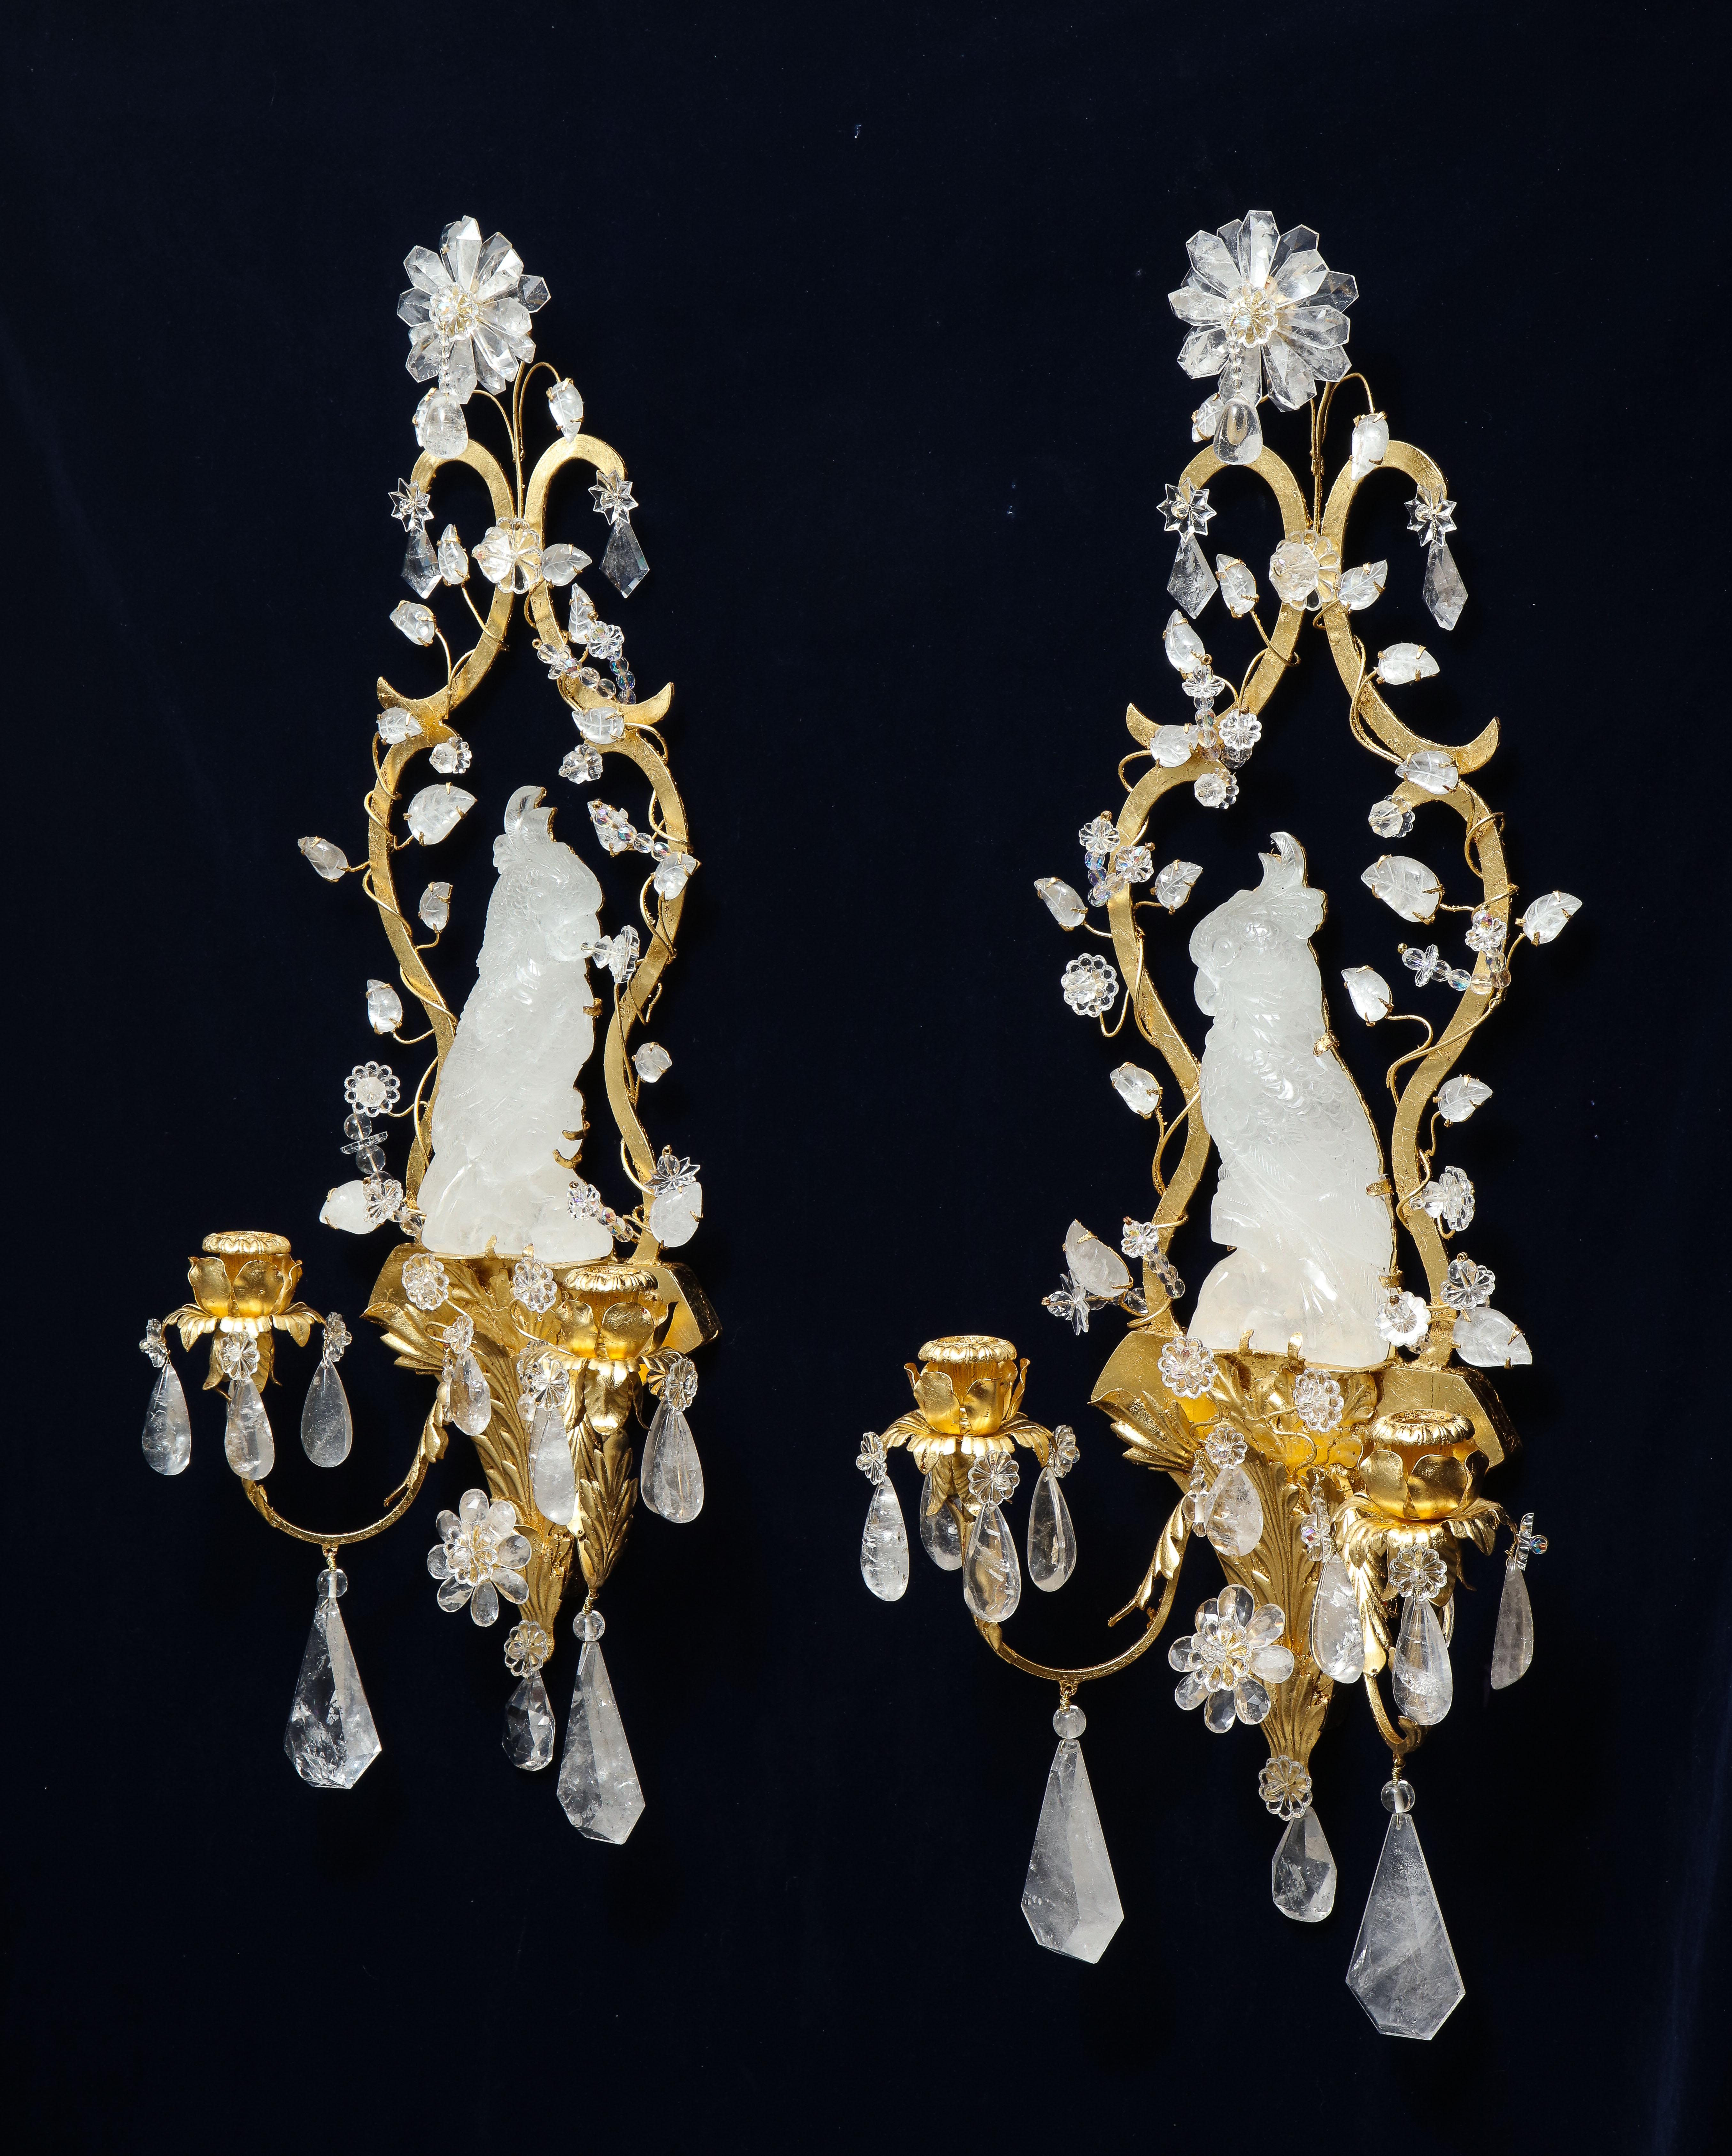 Ein fabelhaftes Paar französischer Mid-Century Modern Louis XVI-Stil und Bagues-Stil Kakadu-Form Bergkristall und 24k vergoldetem Metall Wandapplikationen / Wandleuchten. Jeder dieser Wandleuchter ist dem schönen Kakadu-Vogel nachempfunden. In der